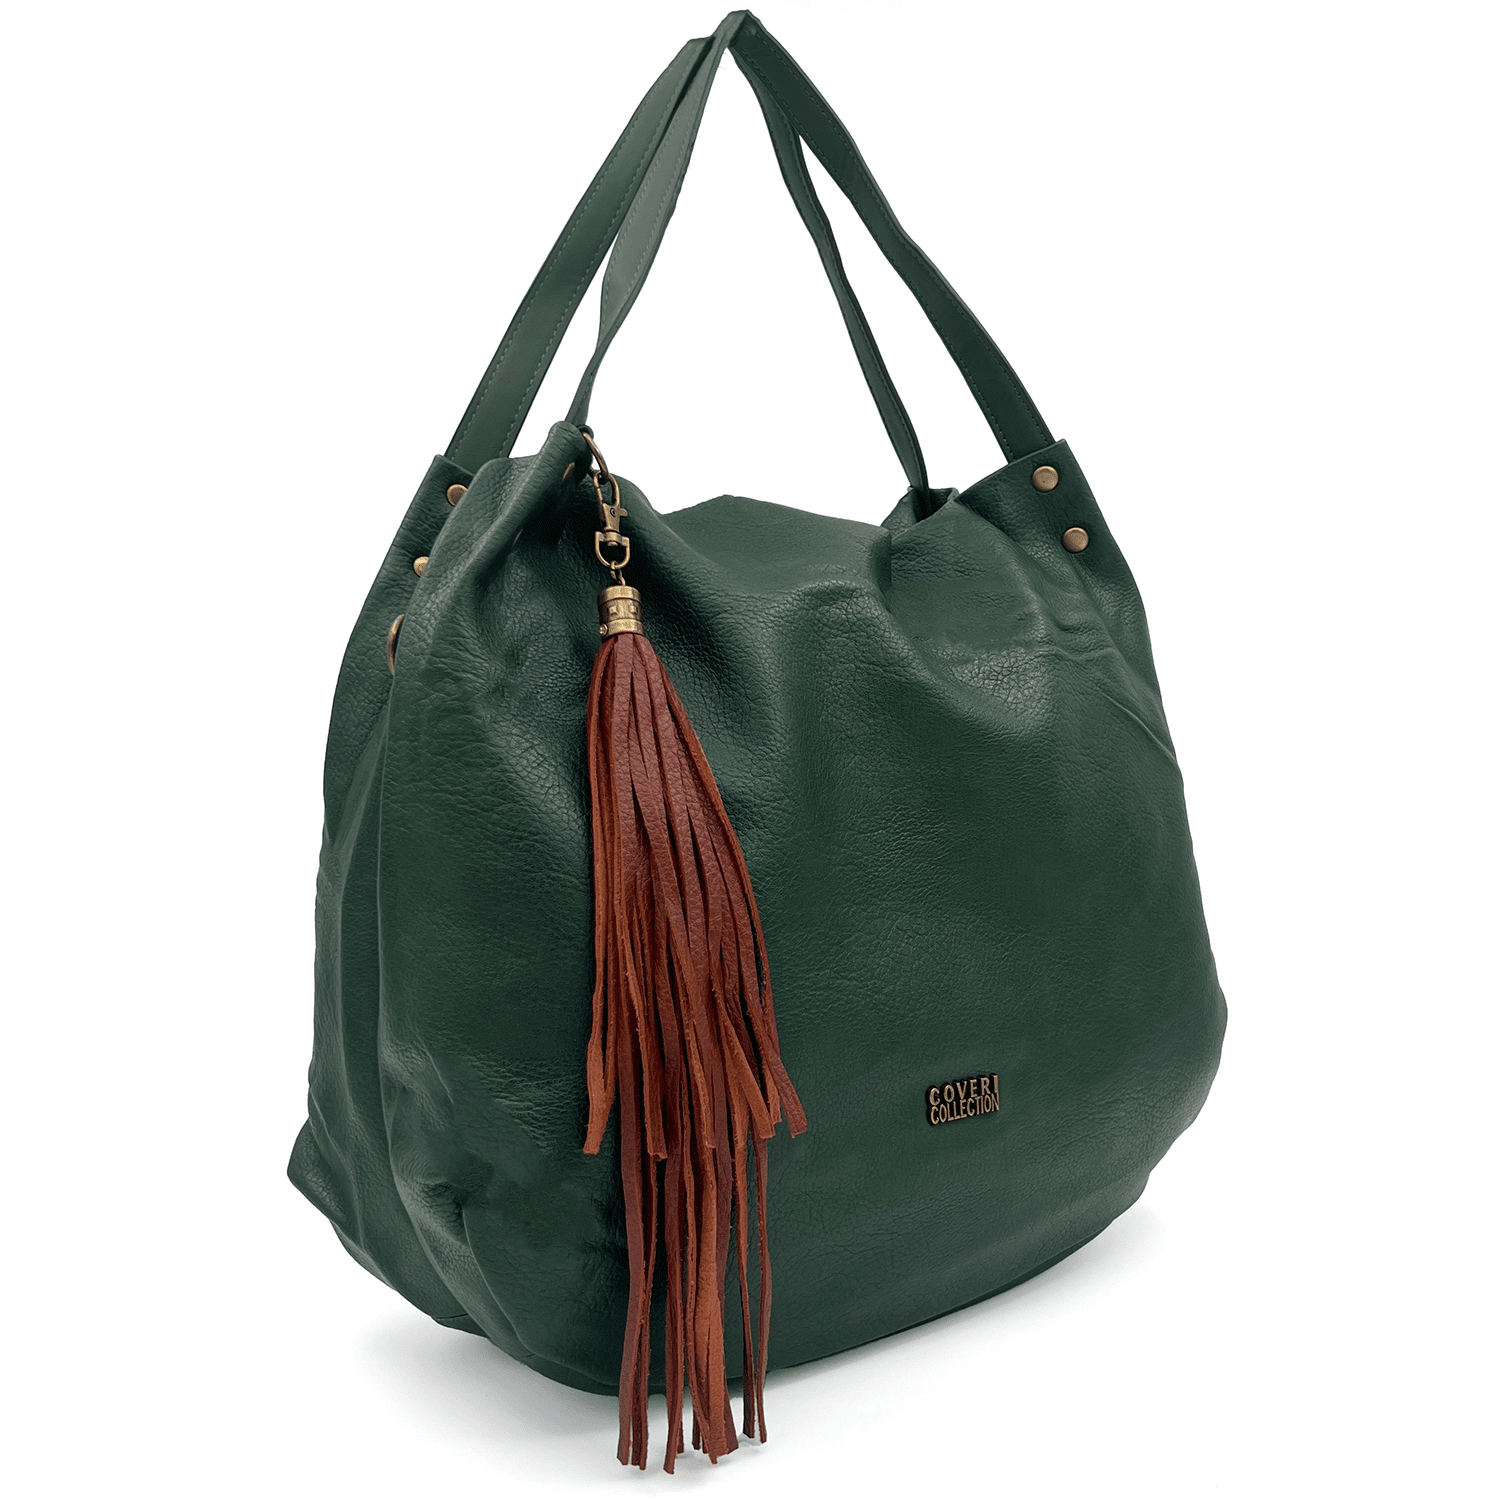 Удобна чанта тип торба с много джобове - тъмно зелена 